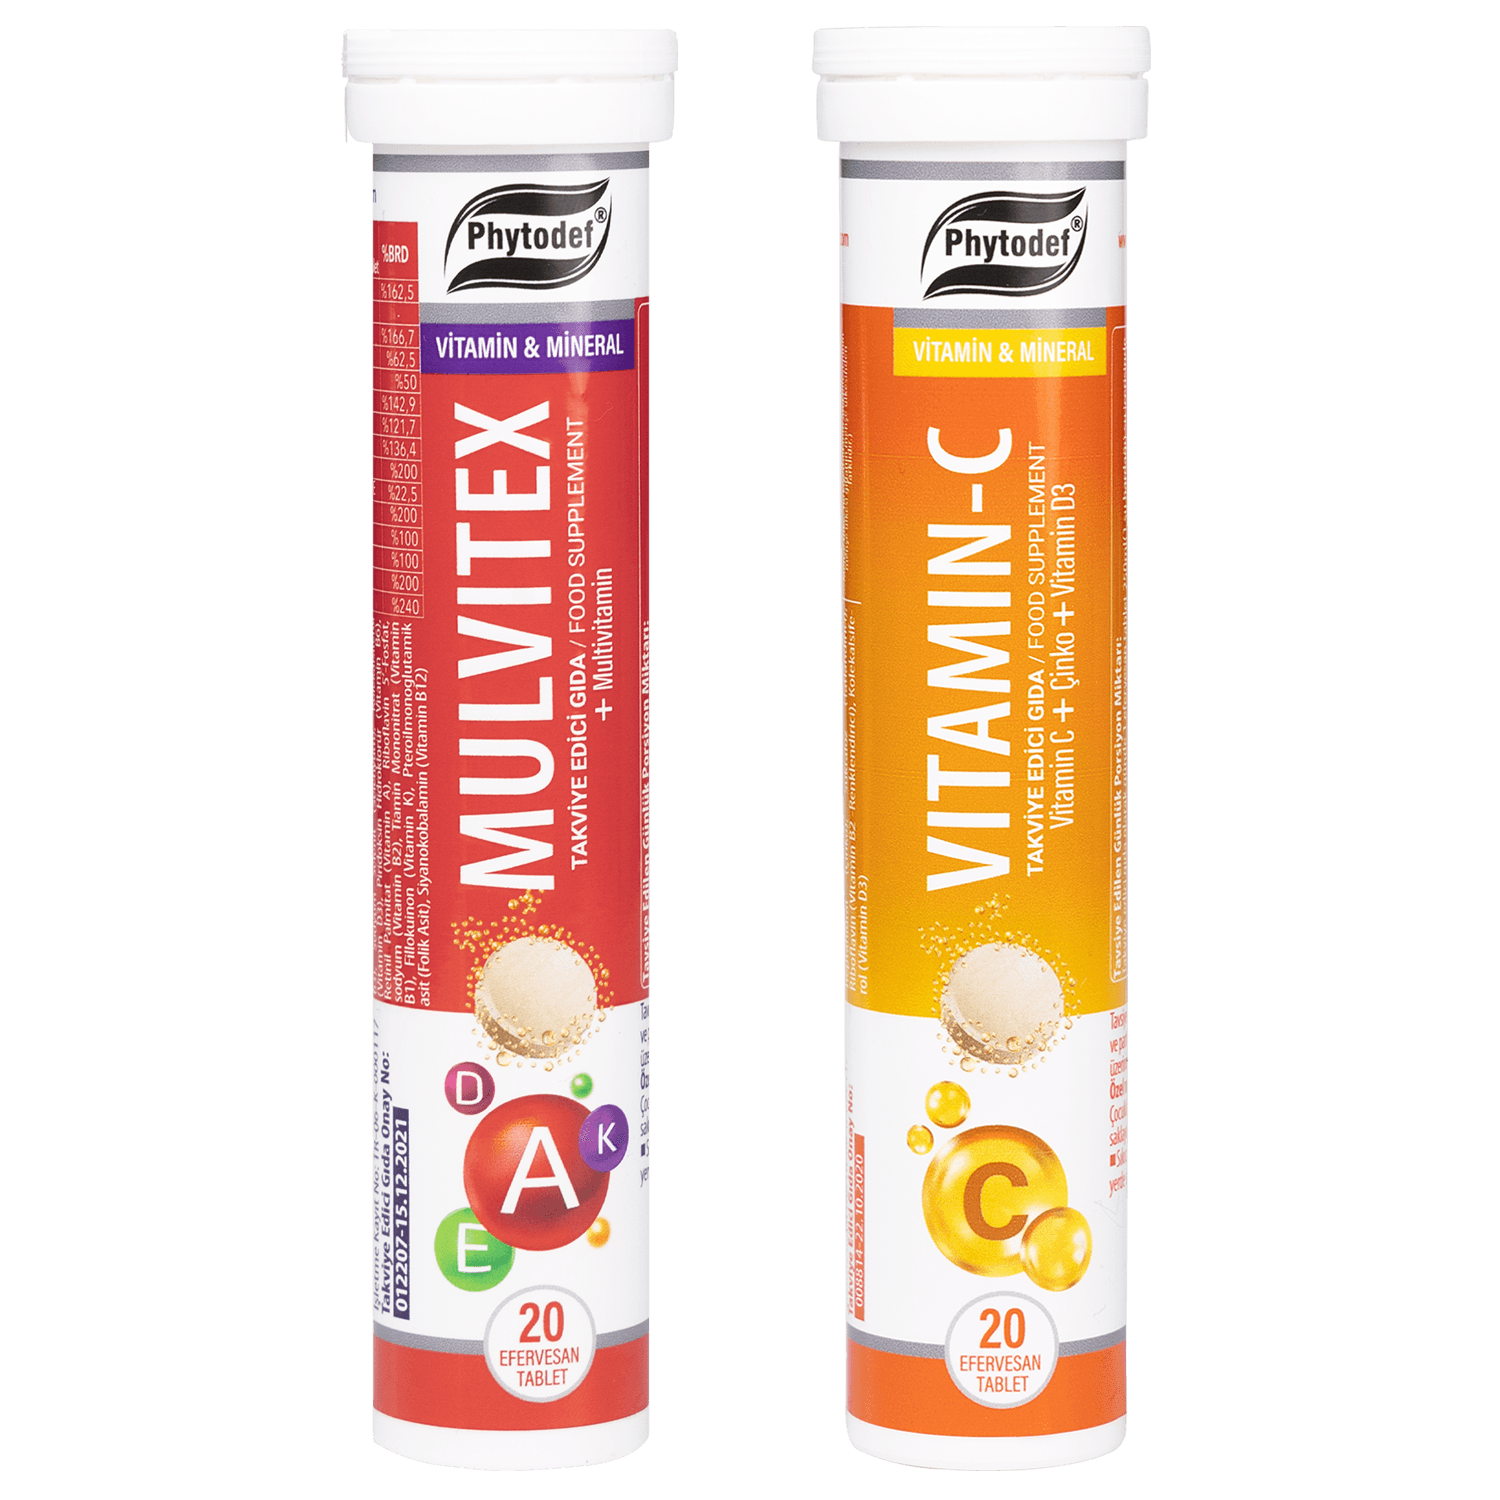 Vitamin C + Çinko + Vitamin D3 Efervesan Tablet - 20 Adet (Portakal Aromalı) & Mulvitex Multivitamin Efervesan Tablet - 20 Adet